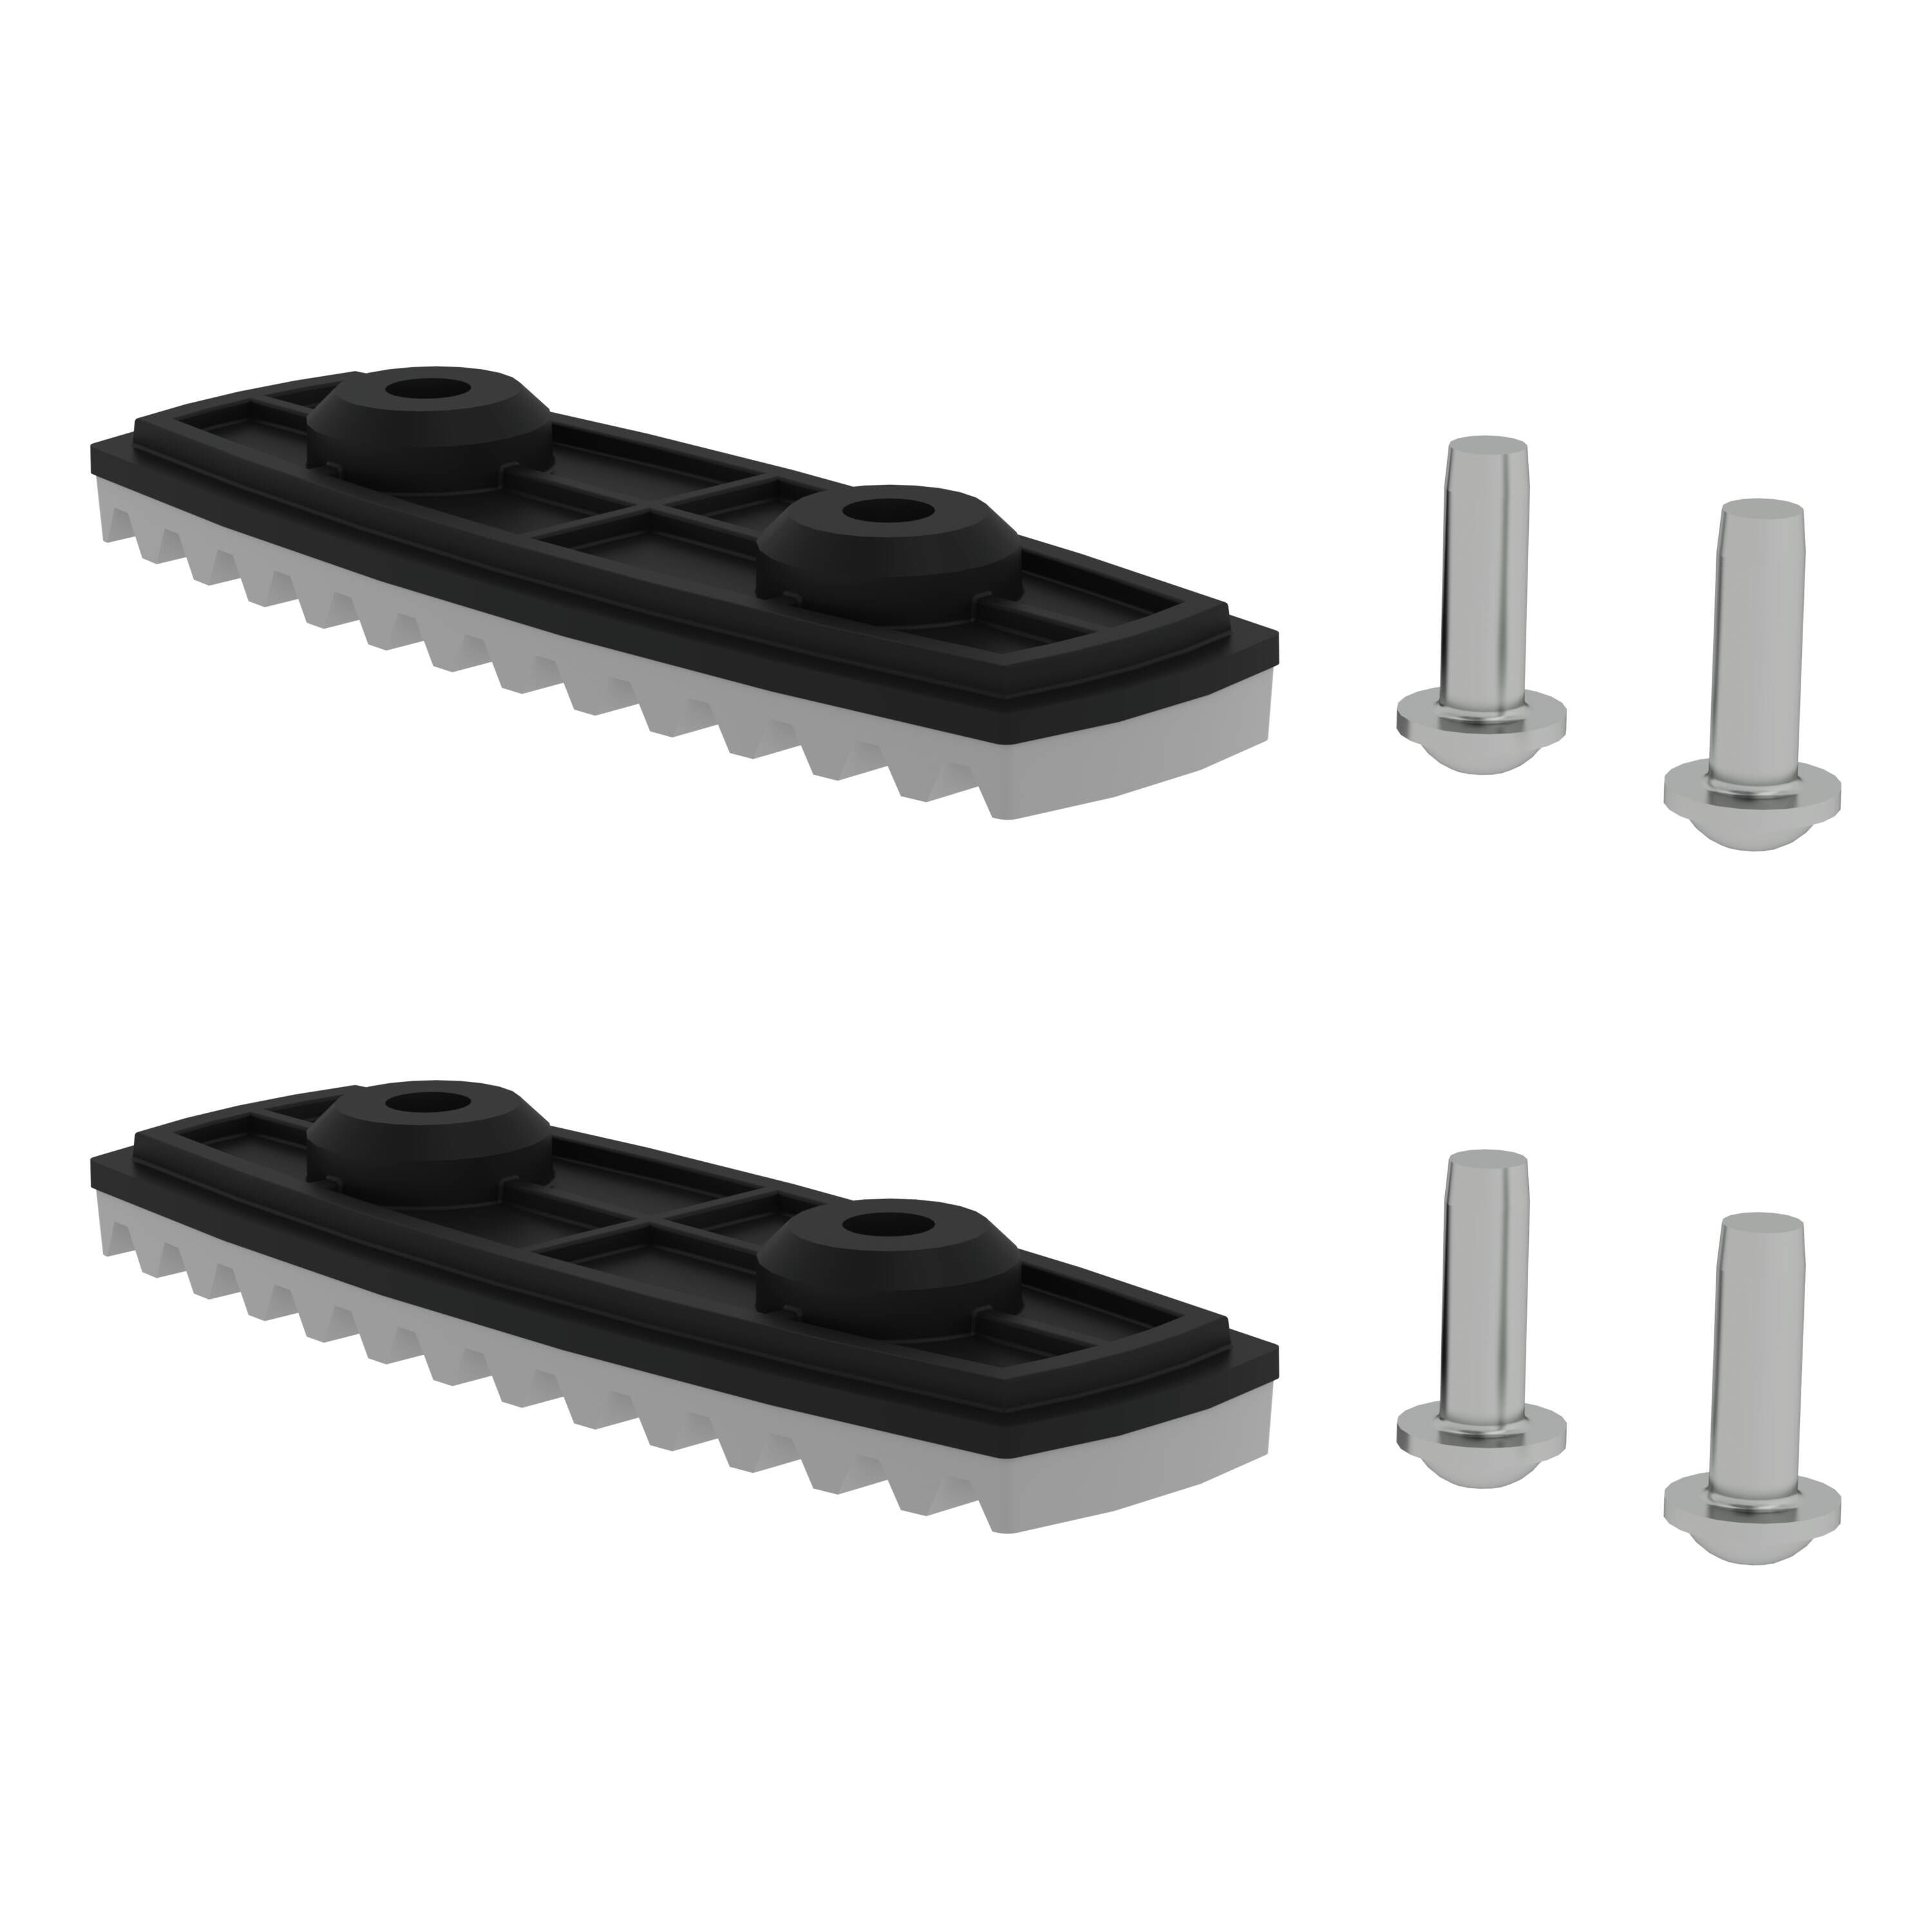 nivello®-Fußplatte für glatte Untergründe für Holmhöhe 85/98 mm